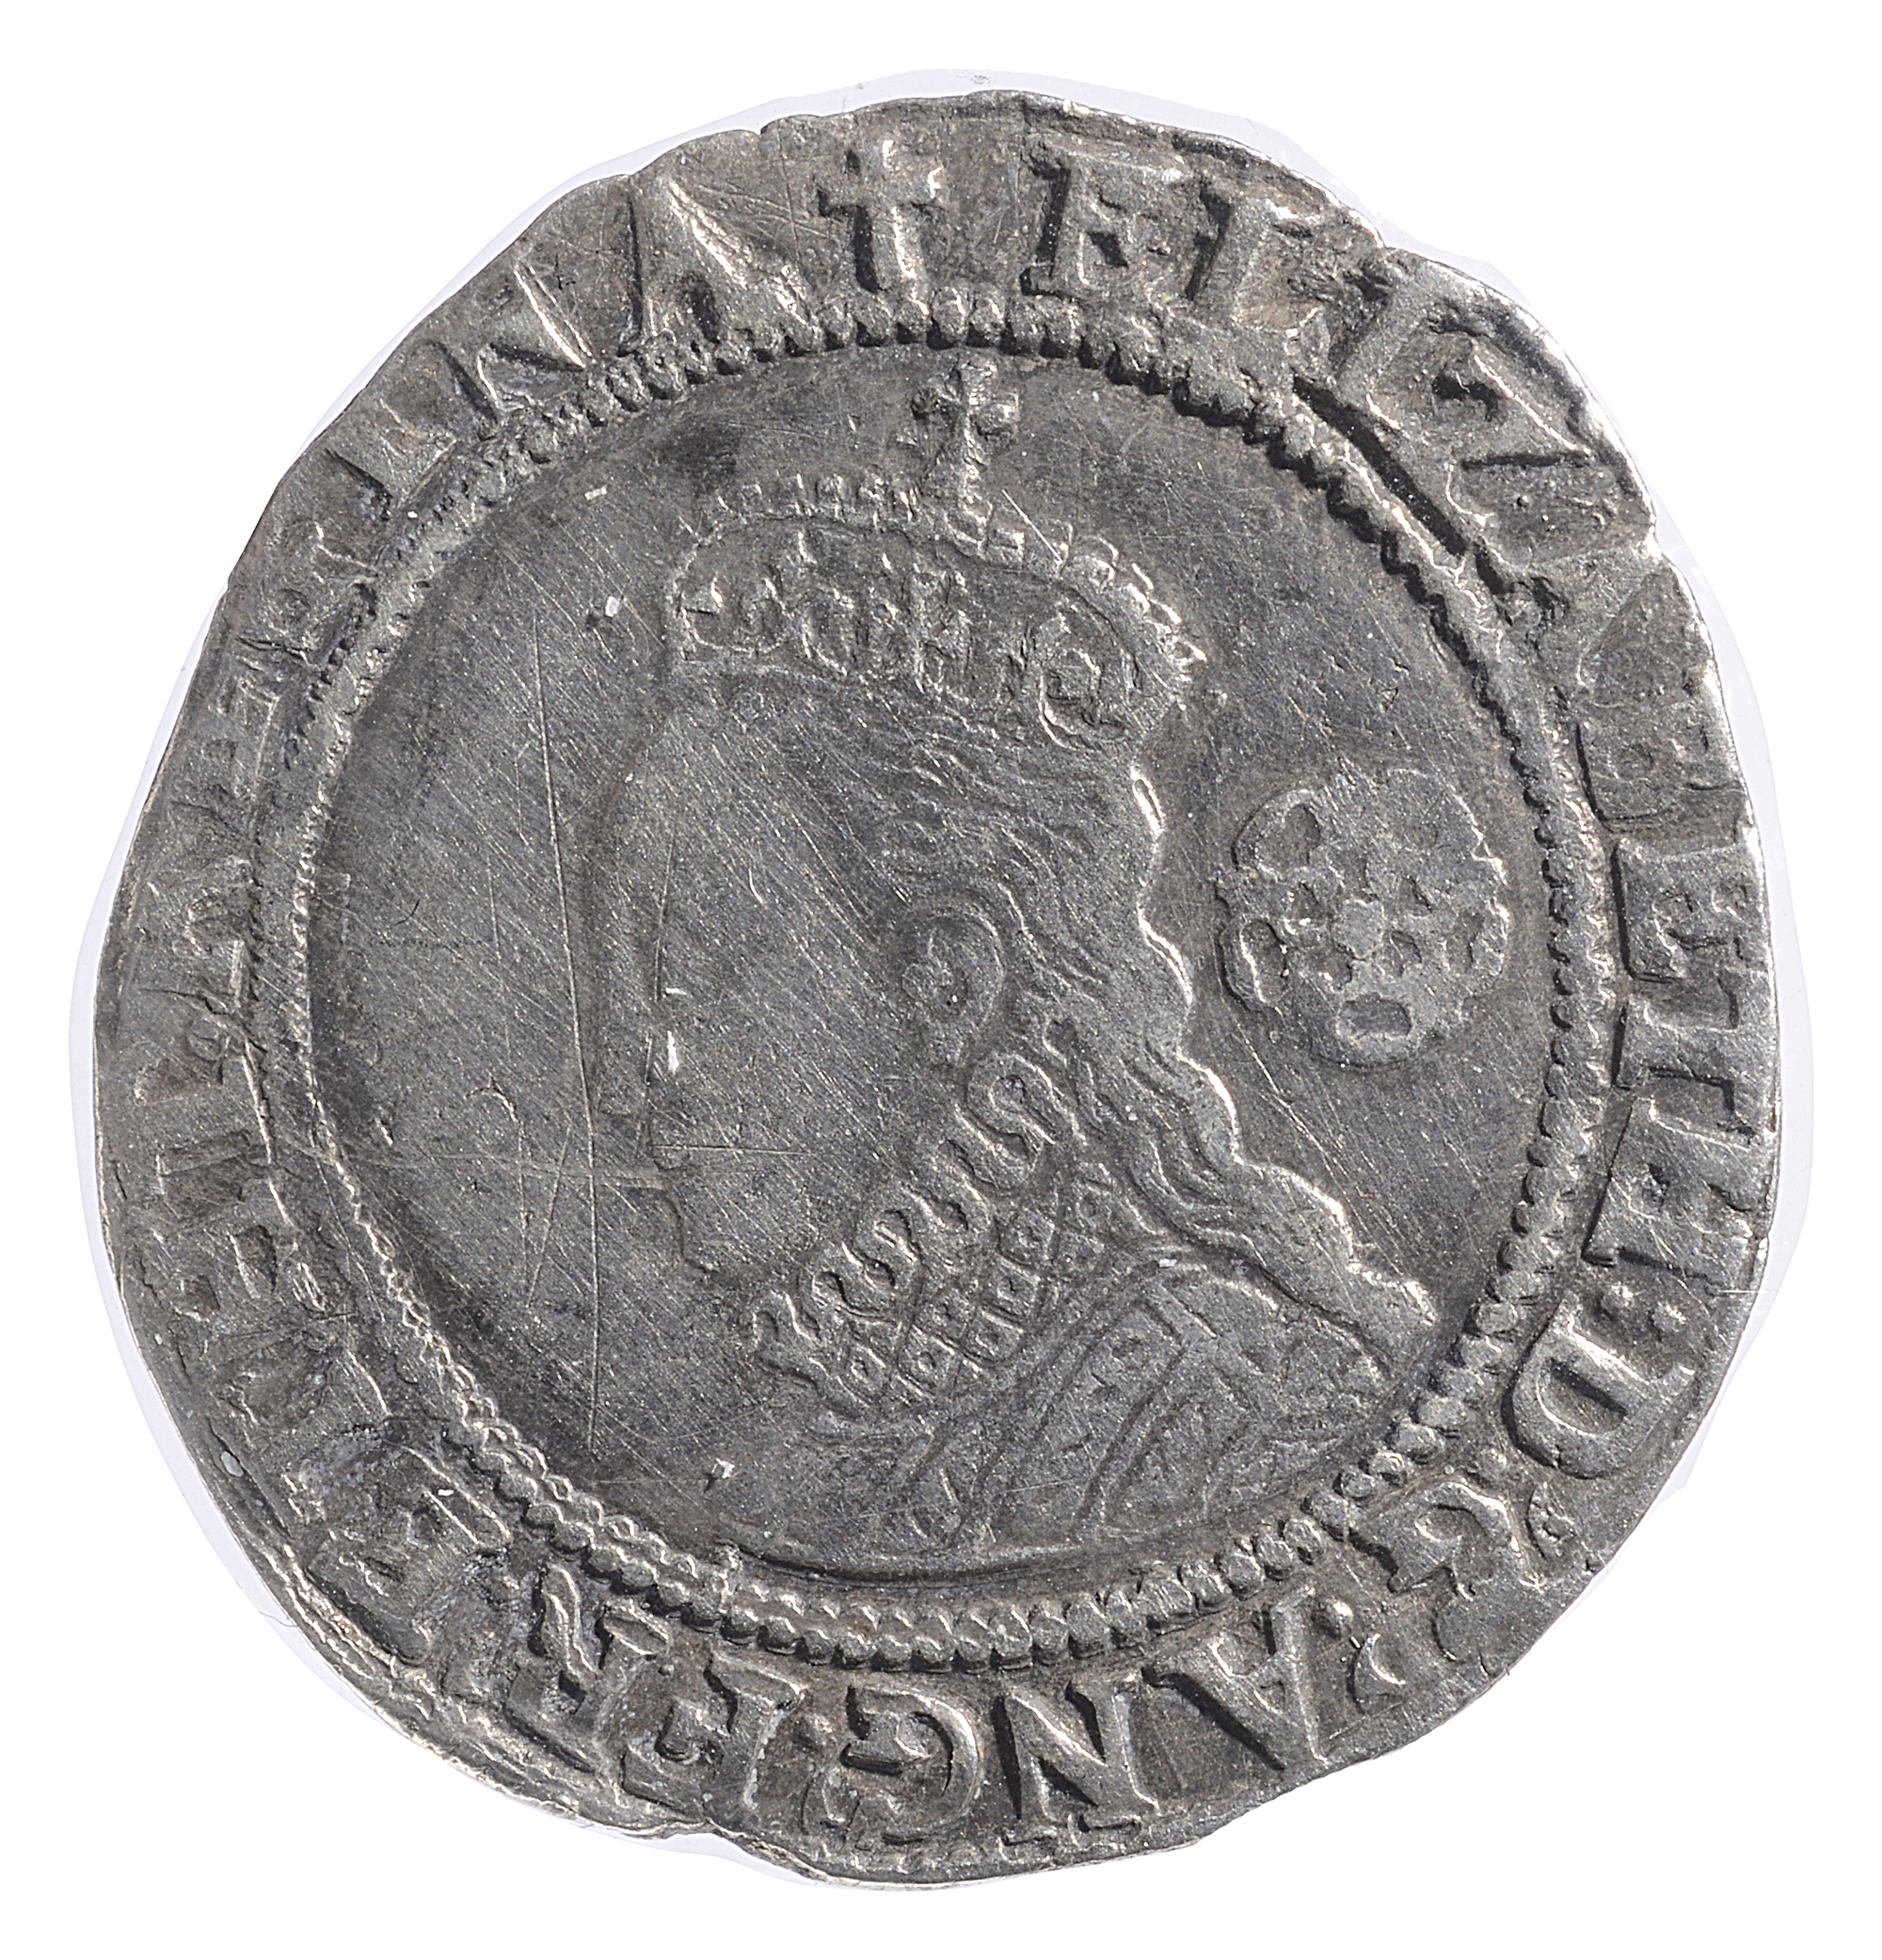 Elizabeth I (1558-1603) milled silver sixpence mint mark Latin Cross, ELIZABETH D G ANG FRA ET HIB